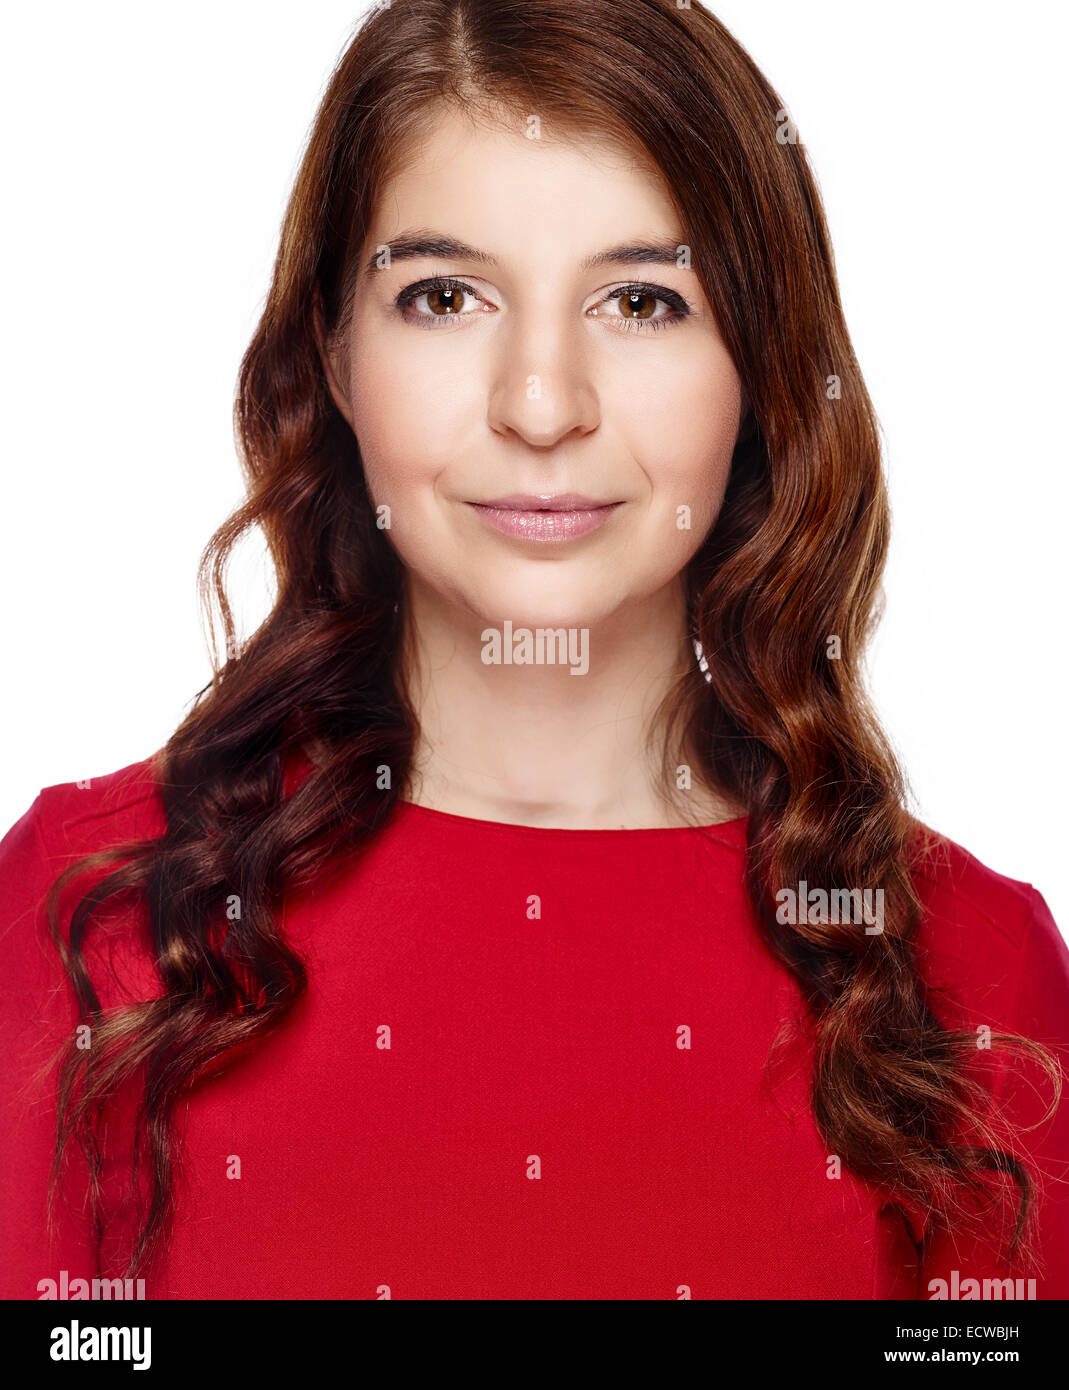 Cerrar, atractivo adulto joven mujer vistiendo vestido rojo y ella mirando a la cámara - fondo blanco Foto de stock